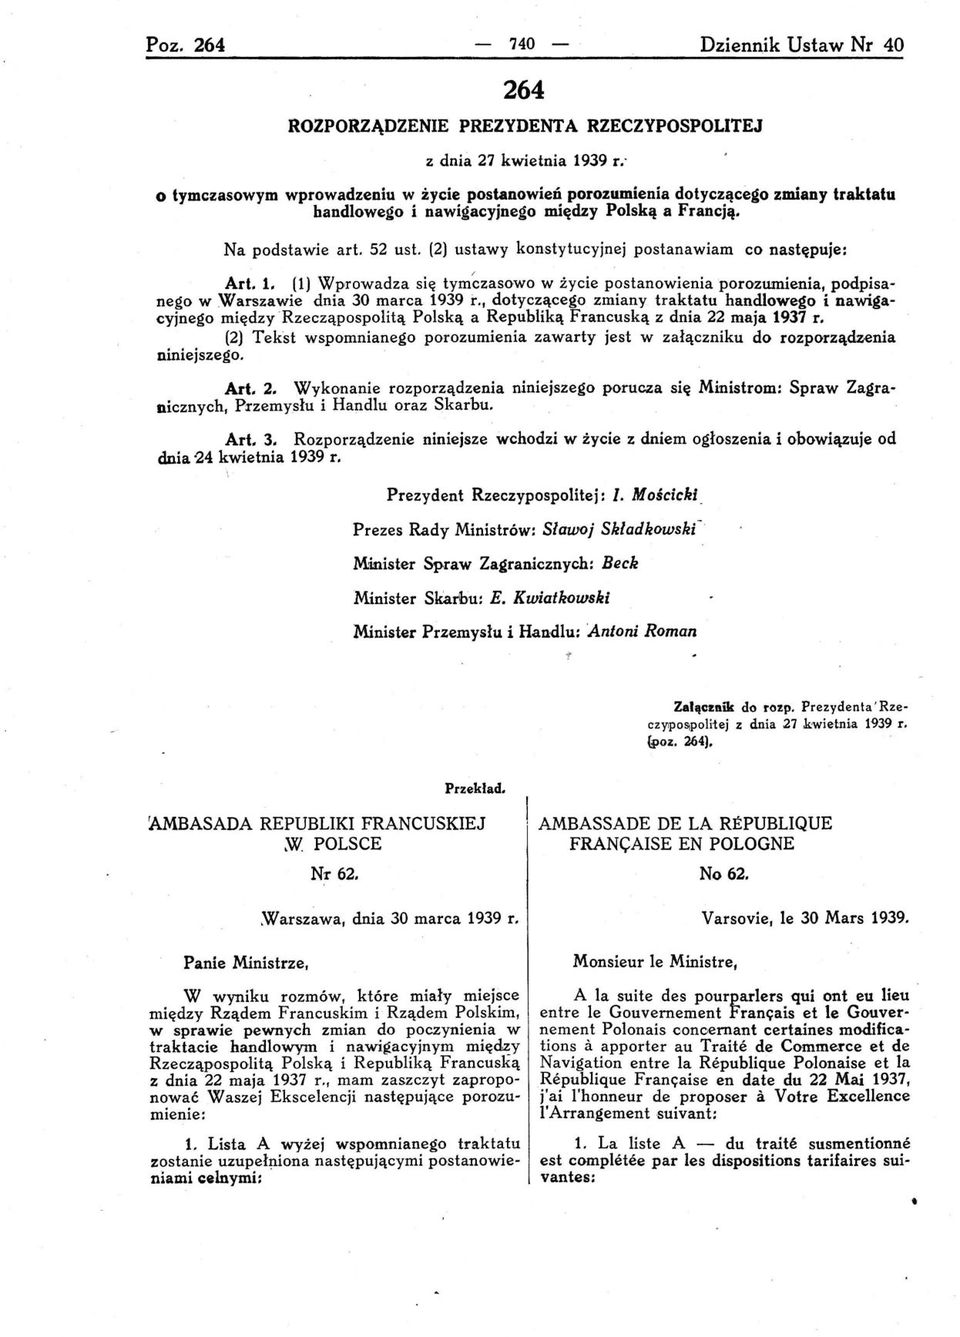 (2) ustawy konstytucyjnej postanawiam co następuje: Art. 1. (1) Wprowadza się tym~zasowo w życie postanowienia porozumienia, podpisanego w Warszawie dnia 30 marca 1939 r.